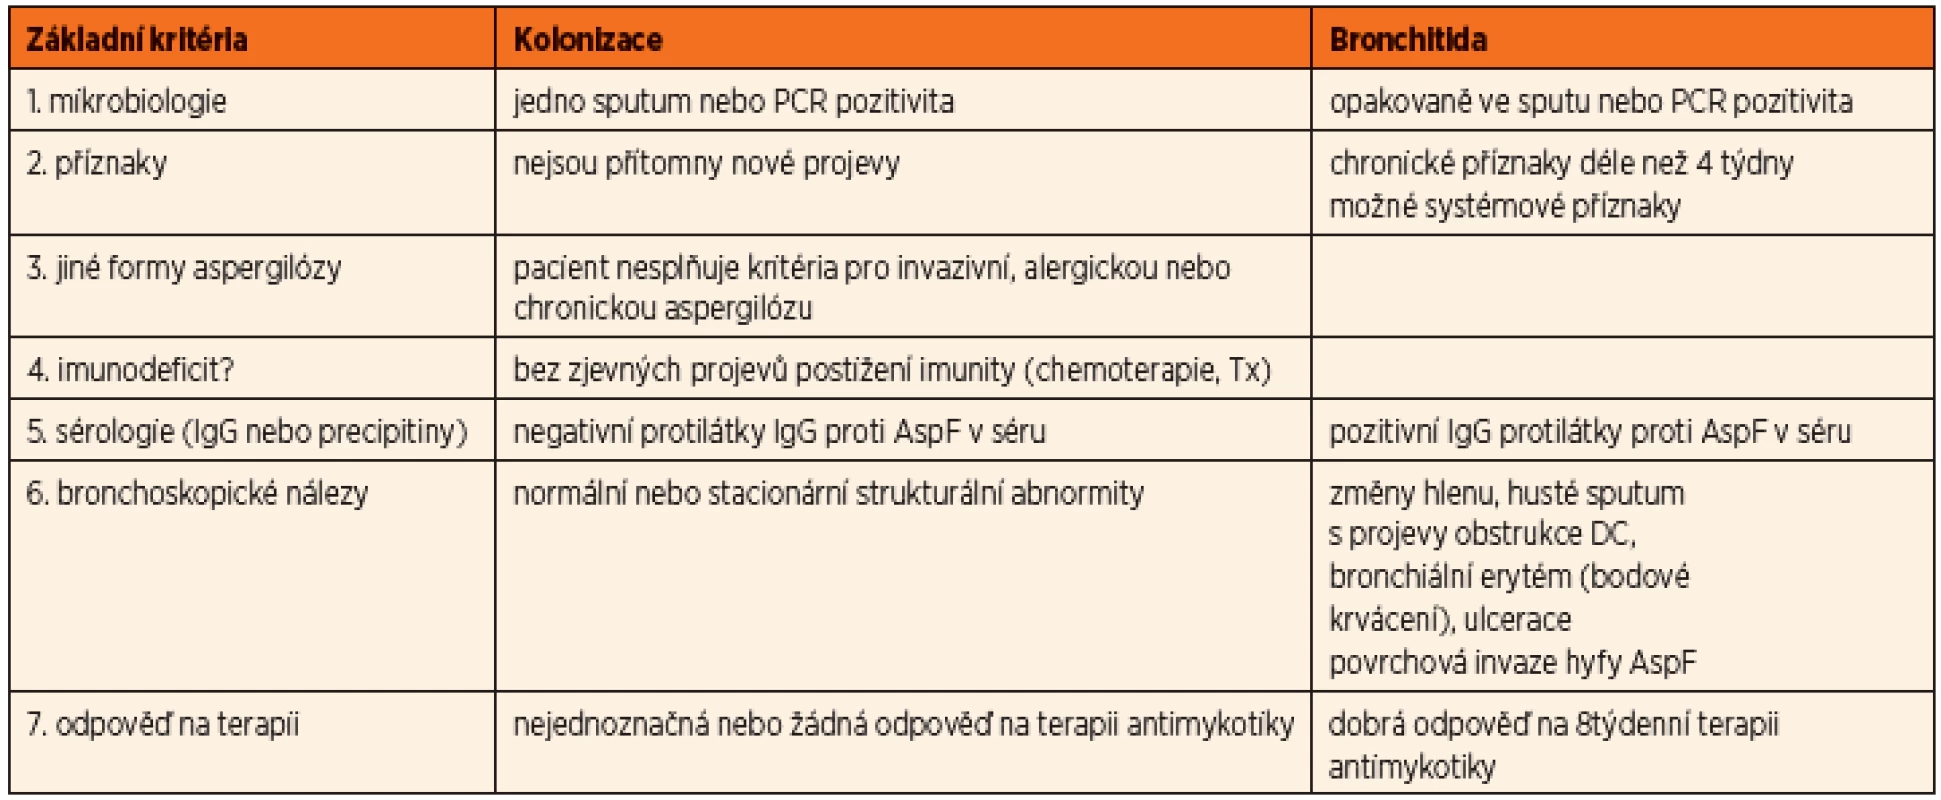 Diferenciální diagnóza mezi kolonizací a aspergilovou bronchitidou (dle Mosse, 2013).